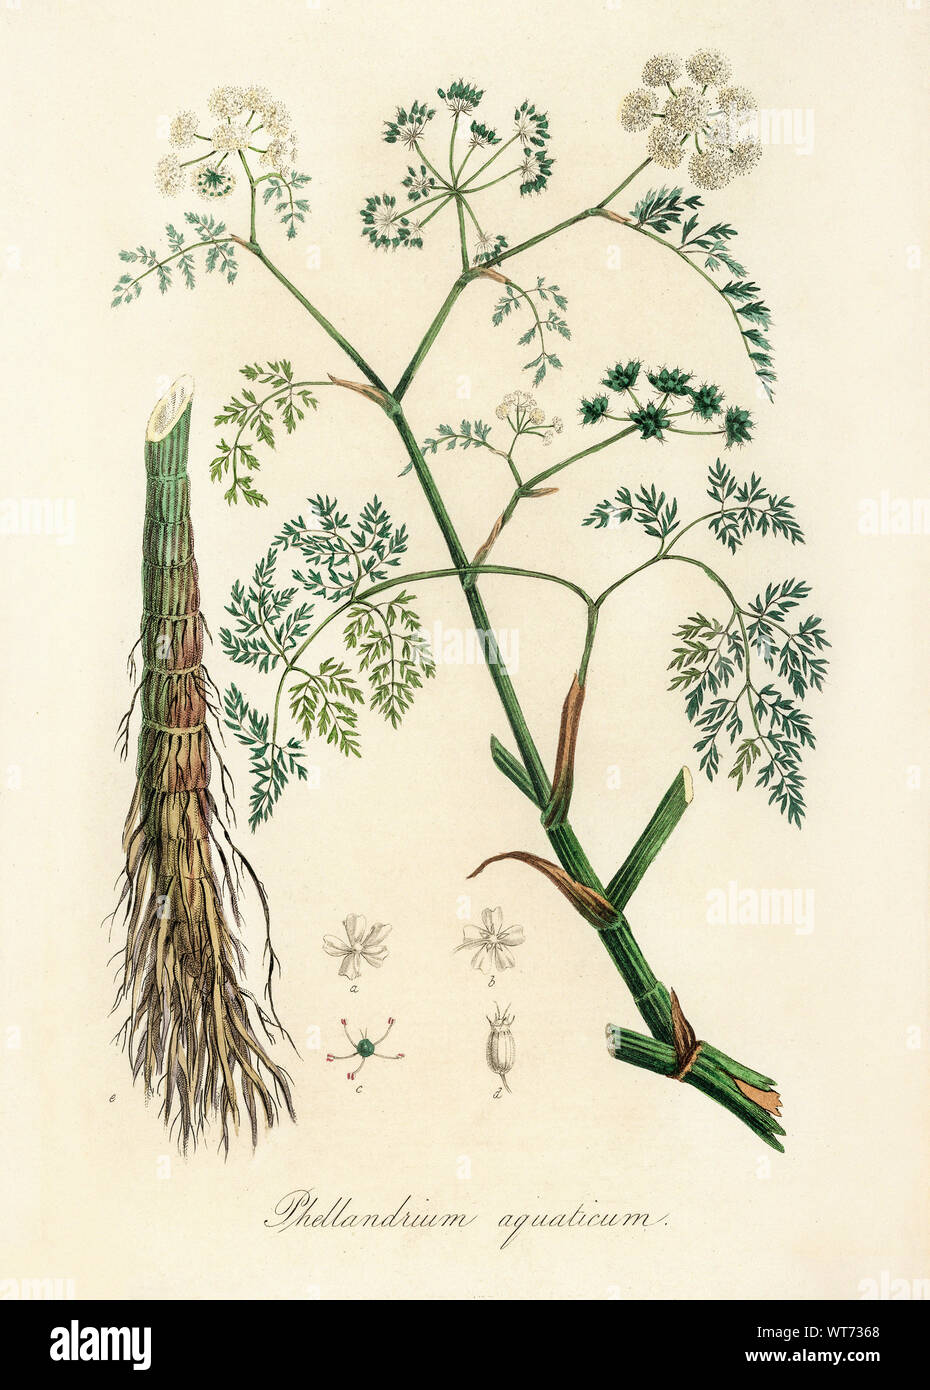 Phellandrium Aguaticum - Watercolor Print 19th Century Stock Photo